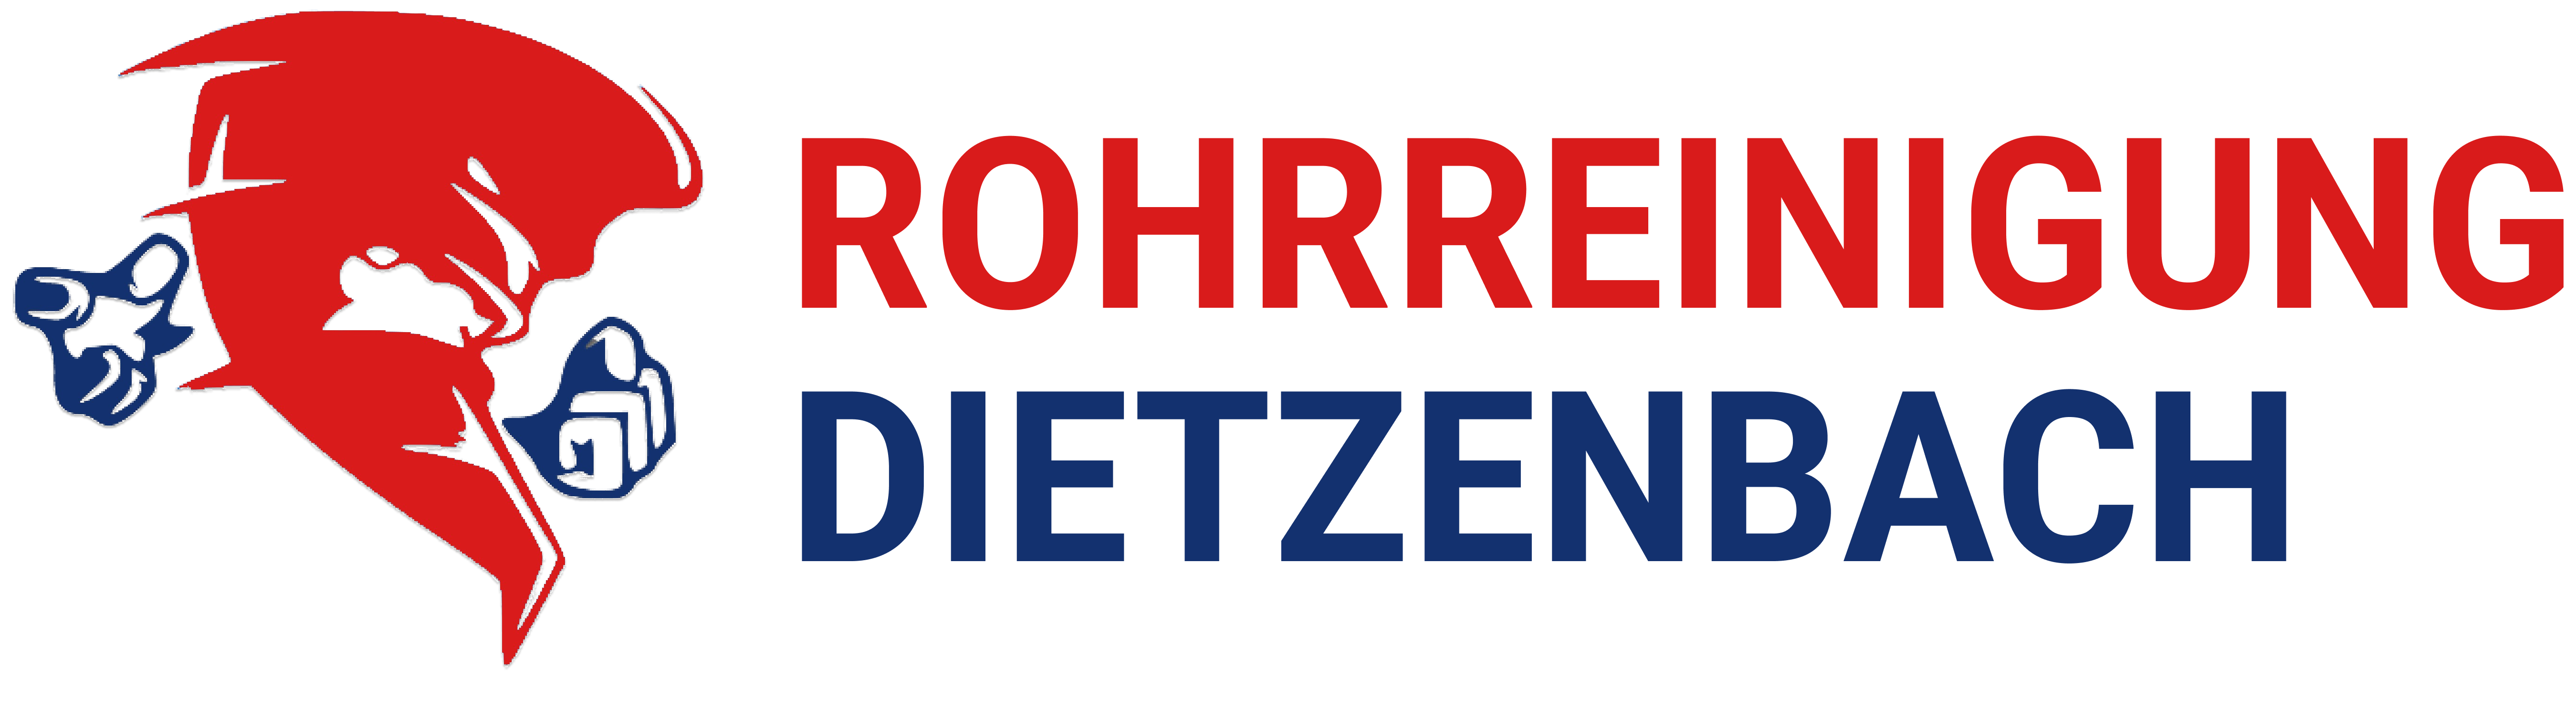 Rohrreinigung in Dietzenbach Logo